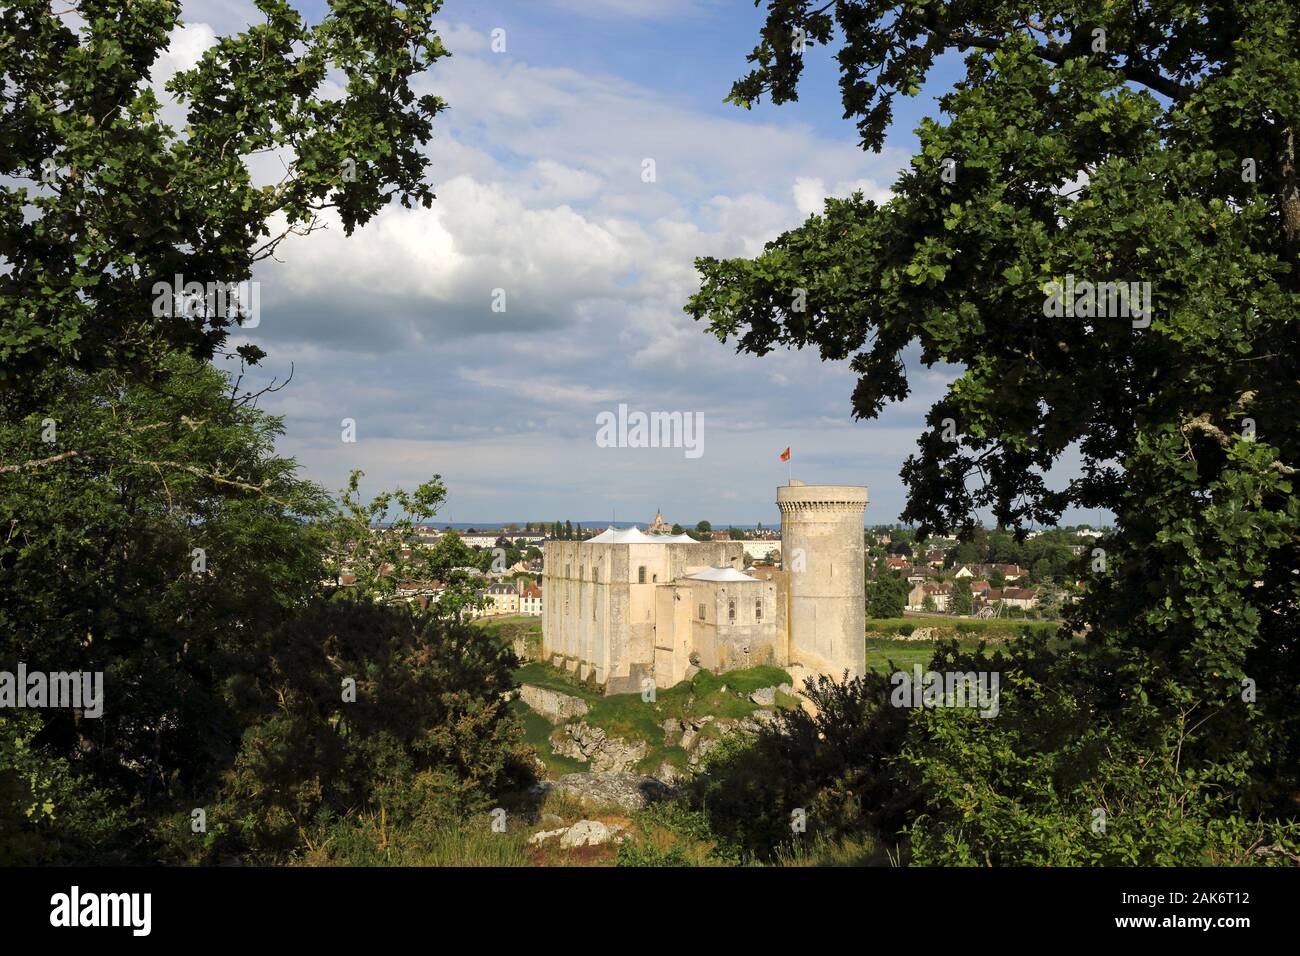 Falaise: Chateau Falaise, Geburtsort von Wilhelm dem Eroberer, Normandie | usage worldwide Stock Photo